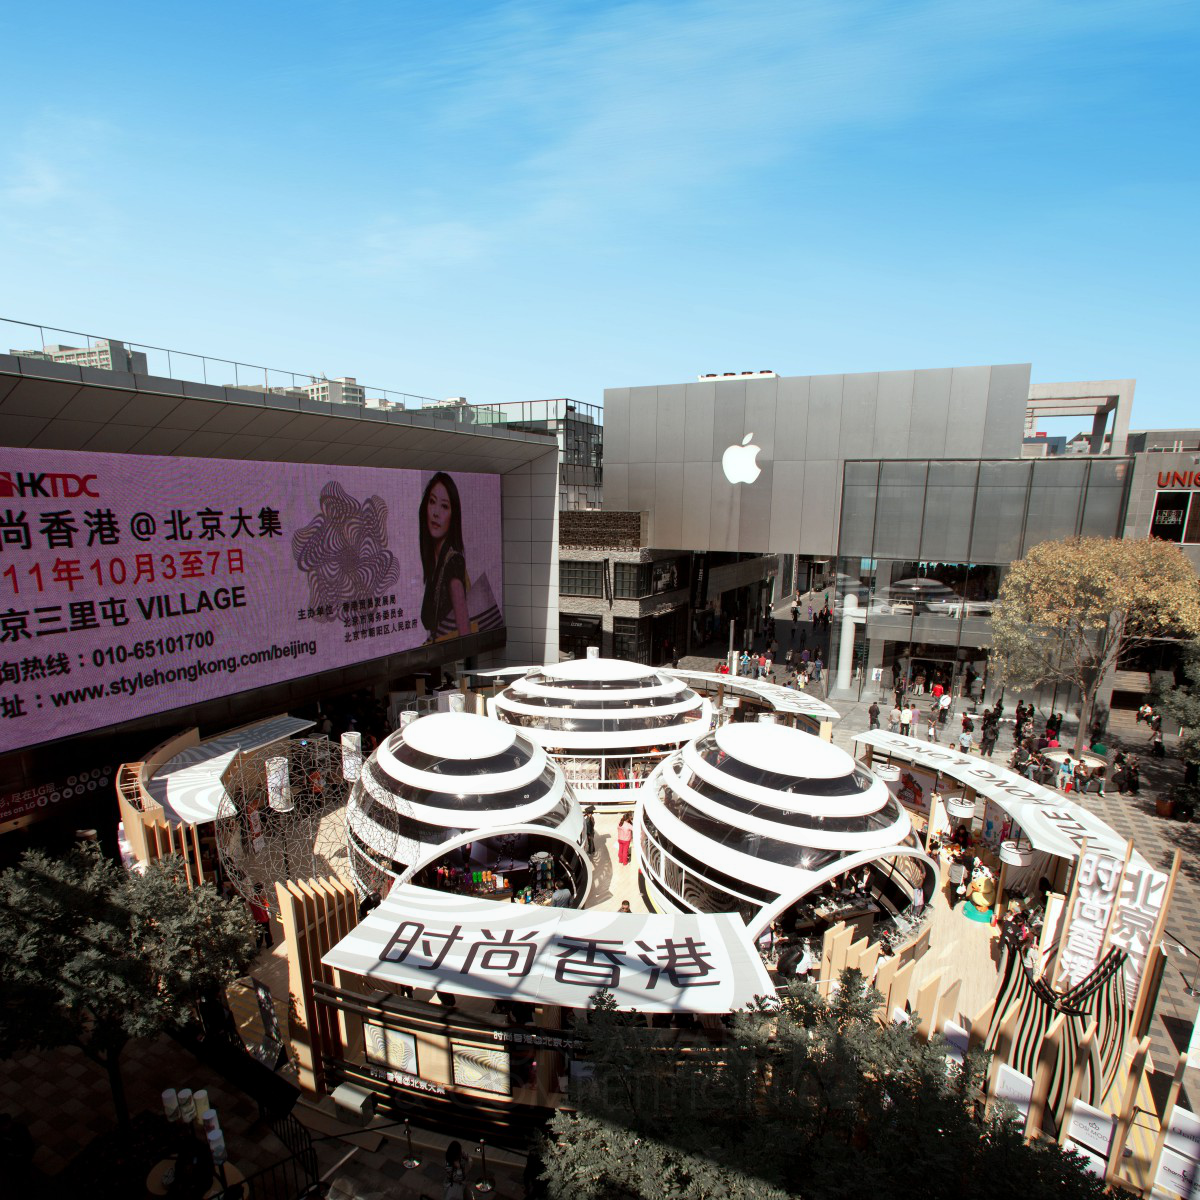 Style Hong Kong Show in Beijing 2011 <b>Trade Fairs